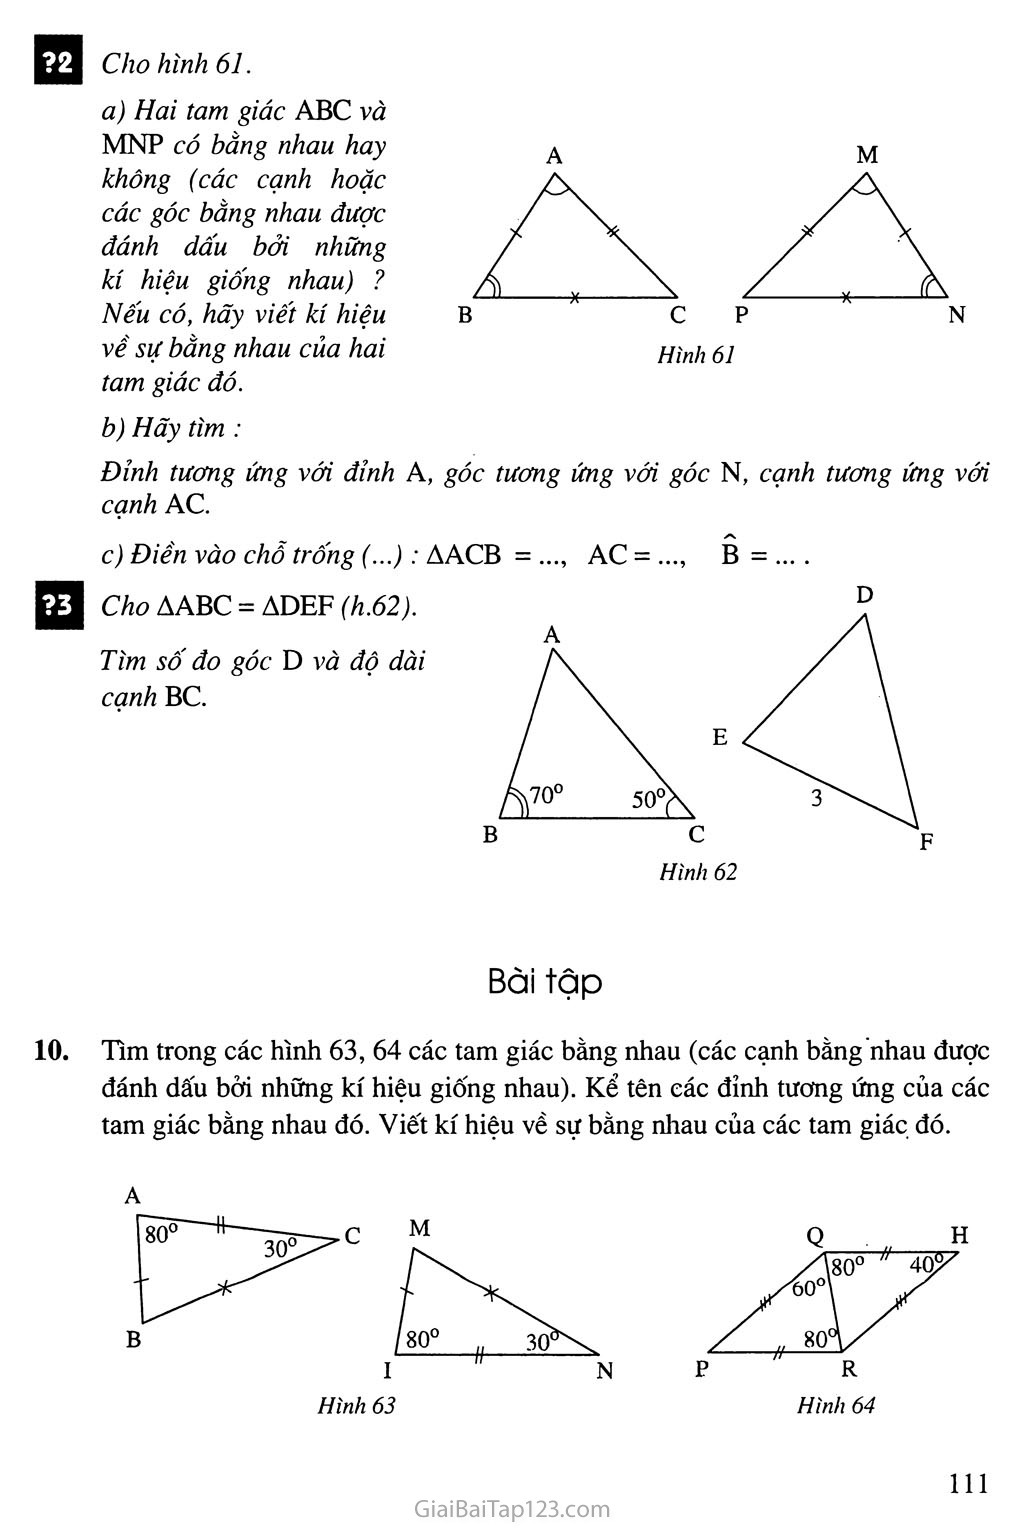 Bài 2. Hai tam giác bằng nhau trang 2